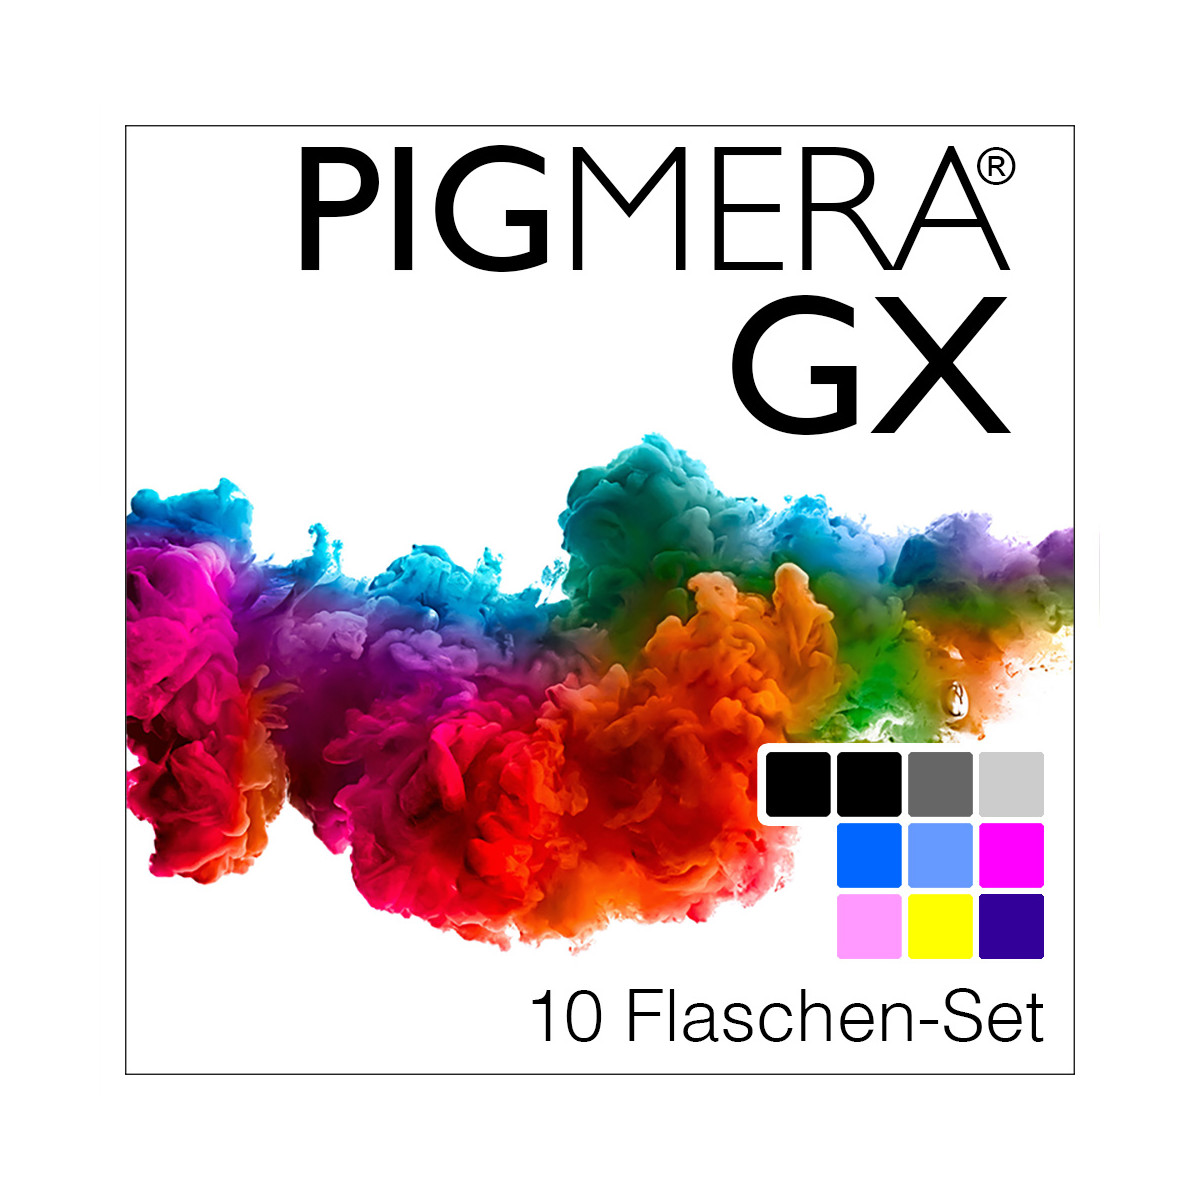 farbenwerk Pigmera GX 10-Flaschen-Set